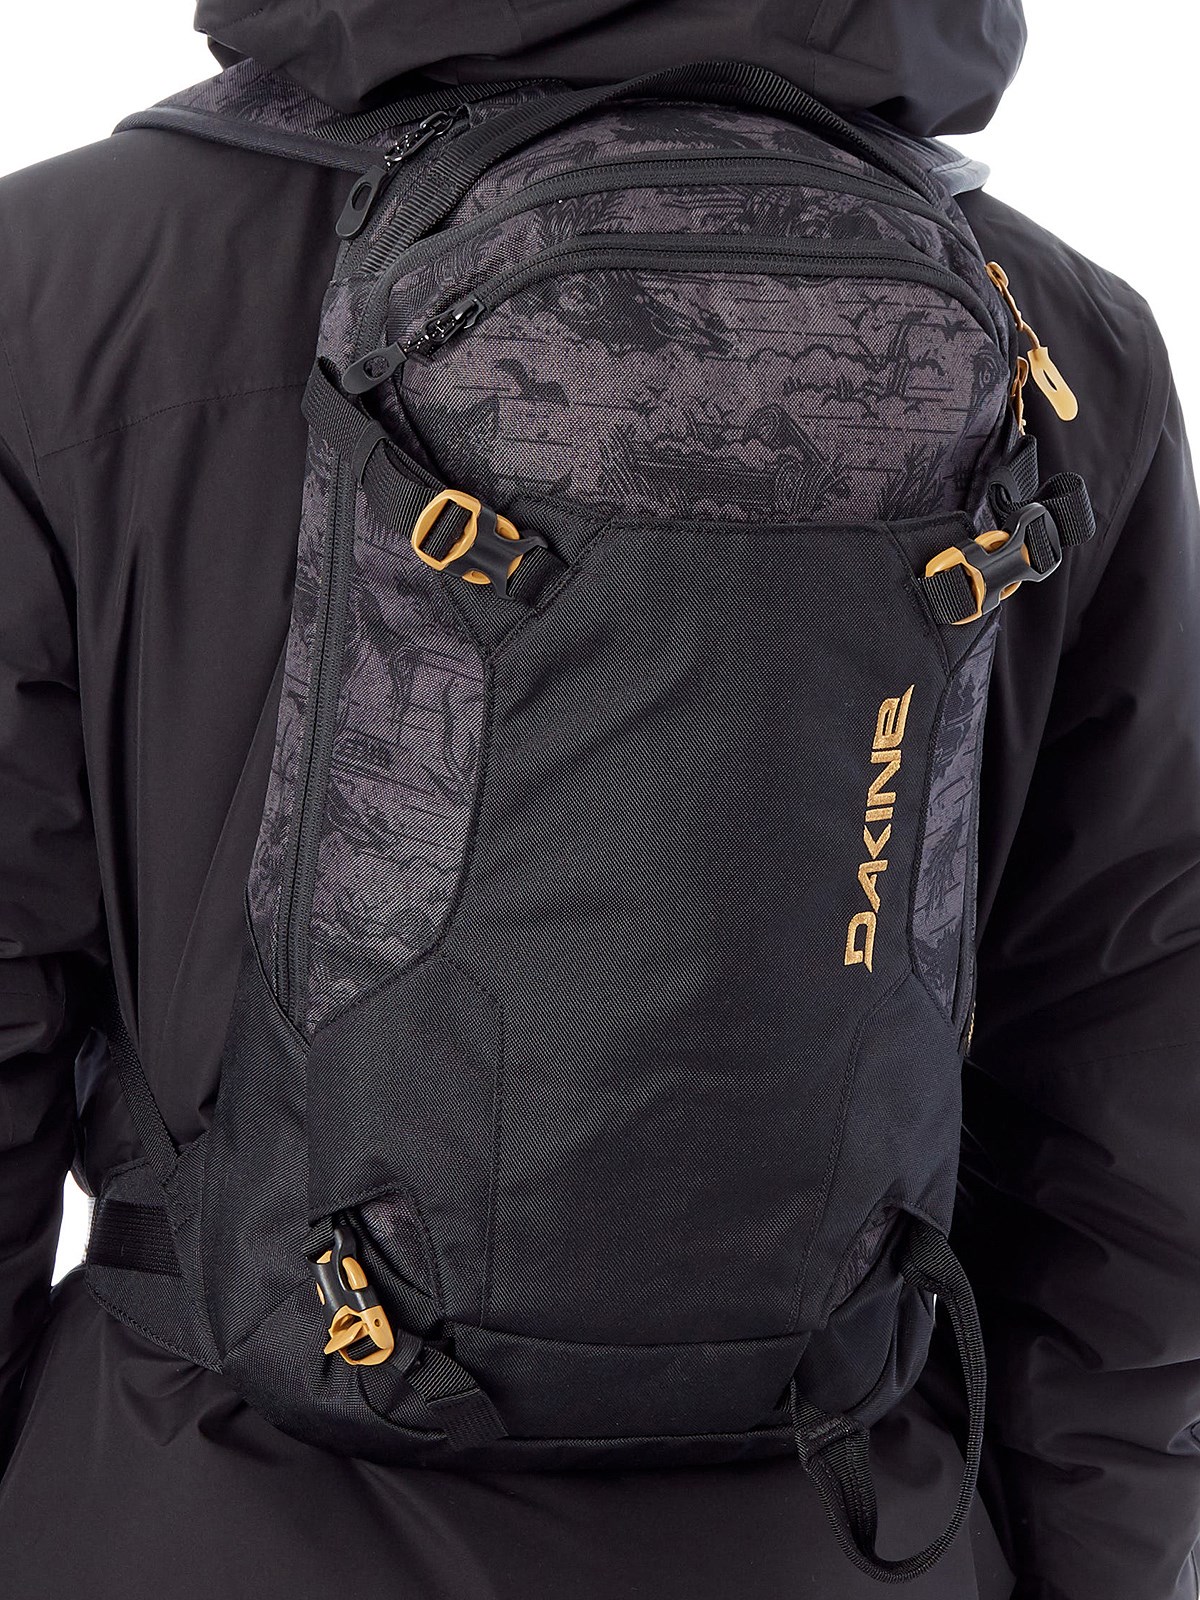 Dakine Heli Pack 12 Snowboard/Ski Backpack